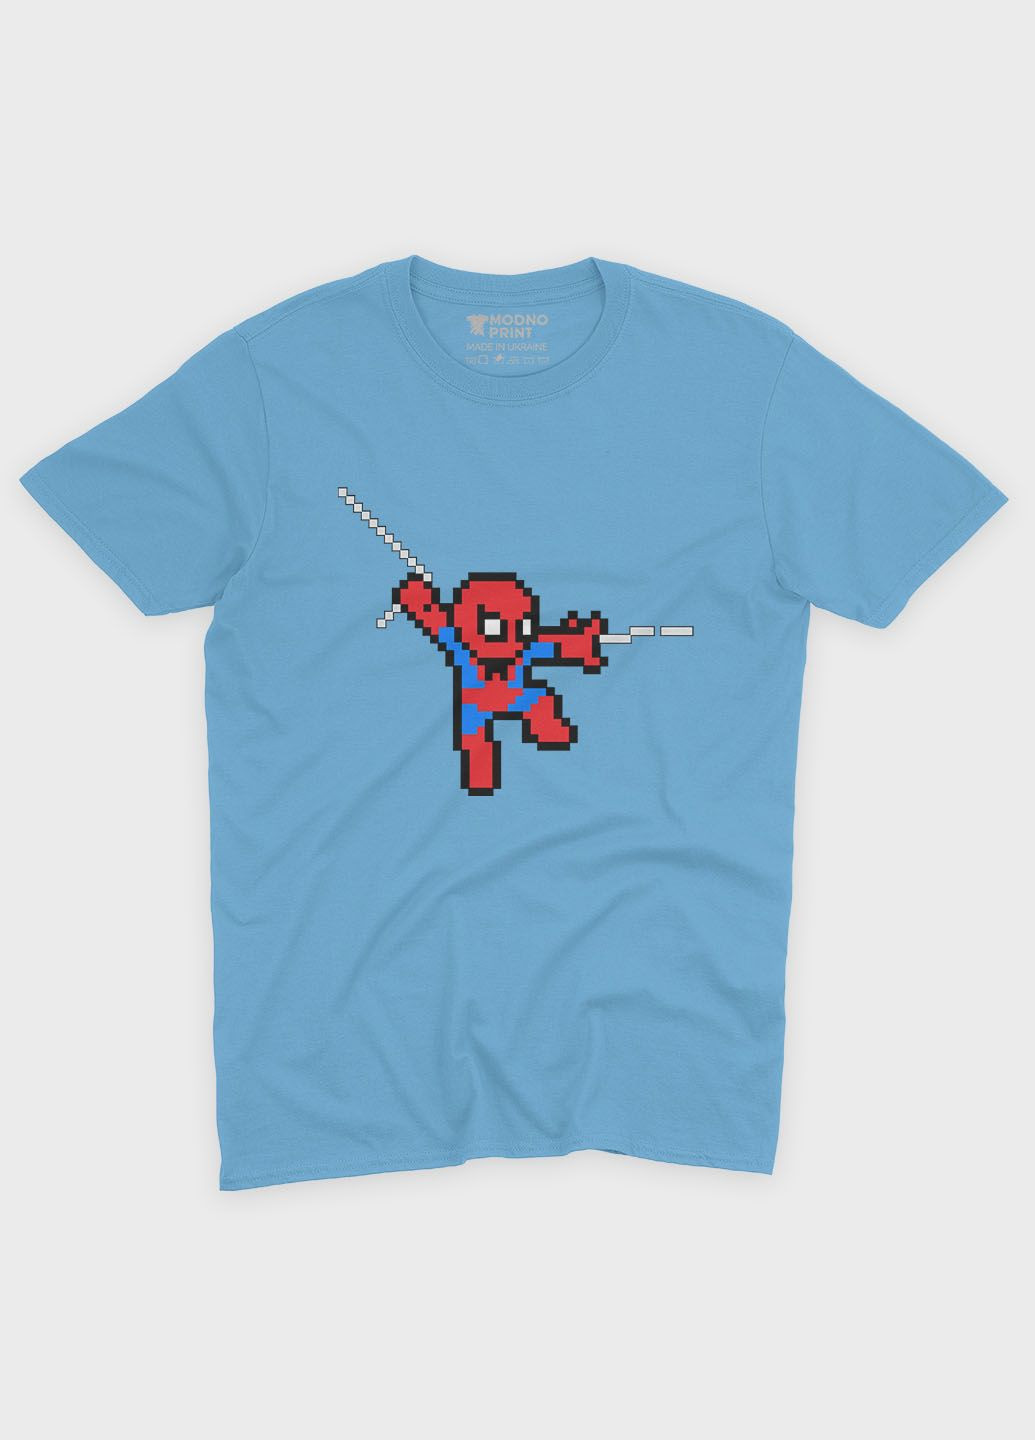 Голубая демисезонная футболка для мальчика с принтом супергероя - человек-паук (ts001-1-lbl-006-014-111-b) Modno